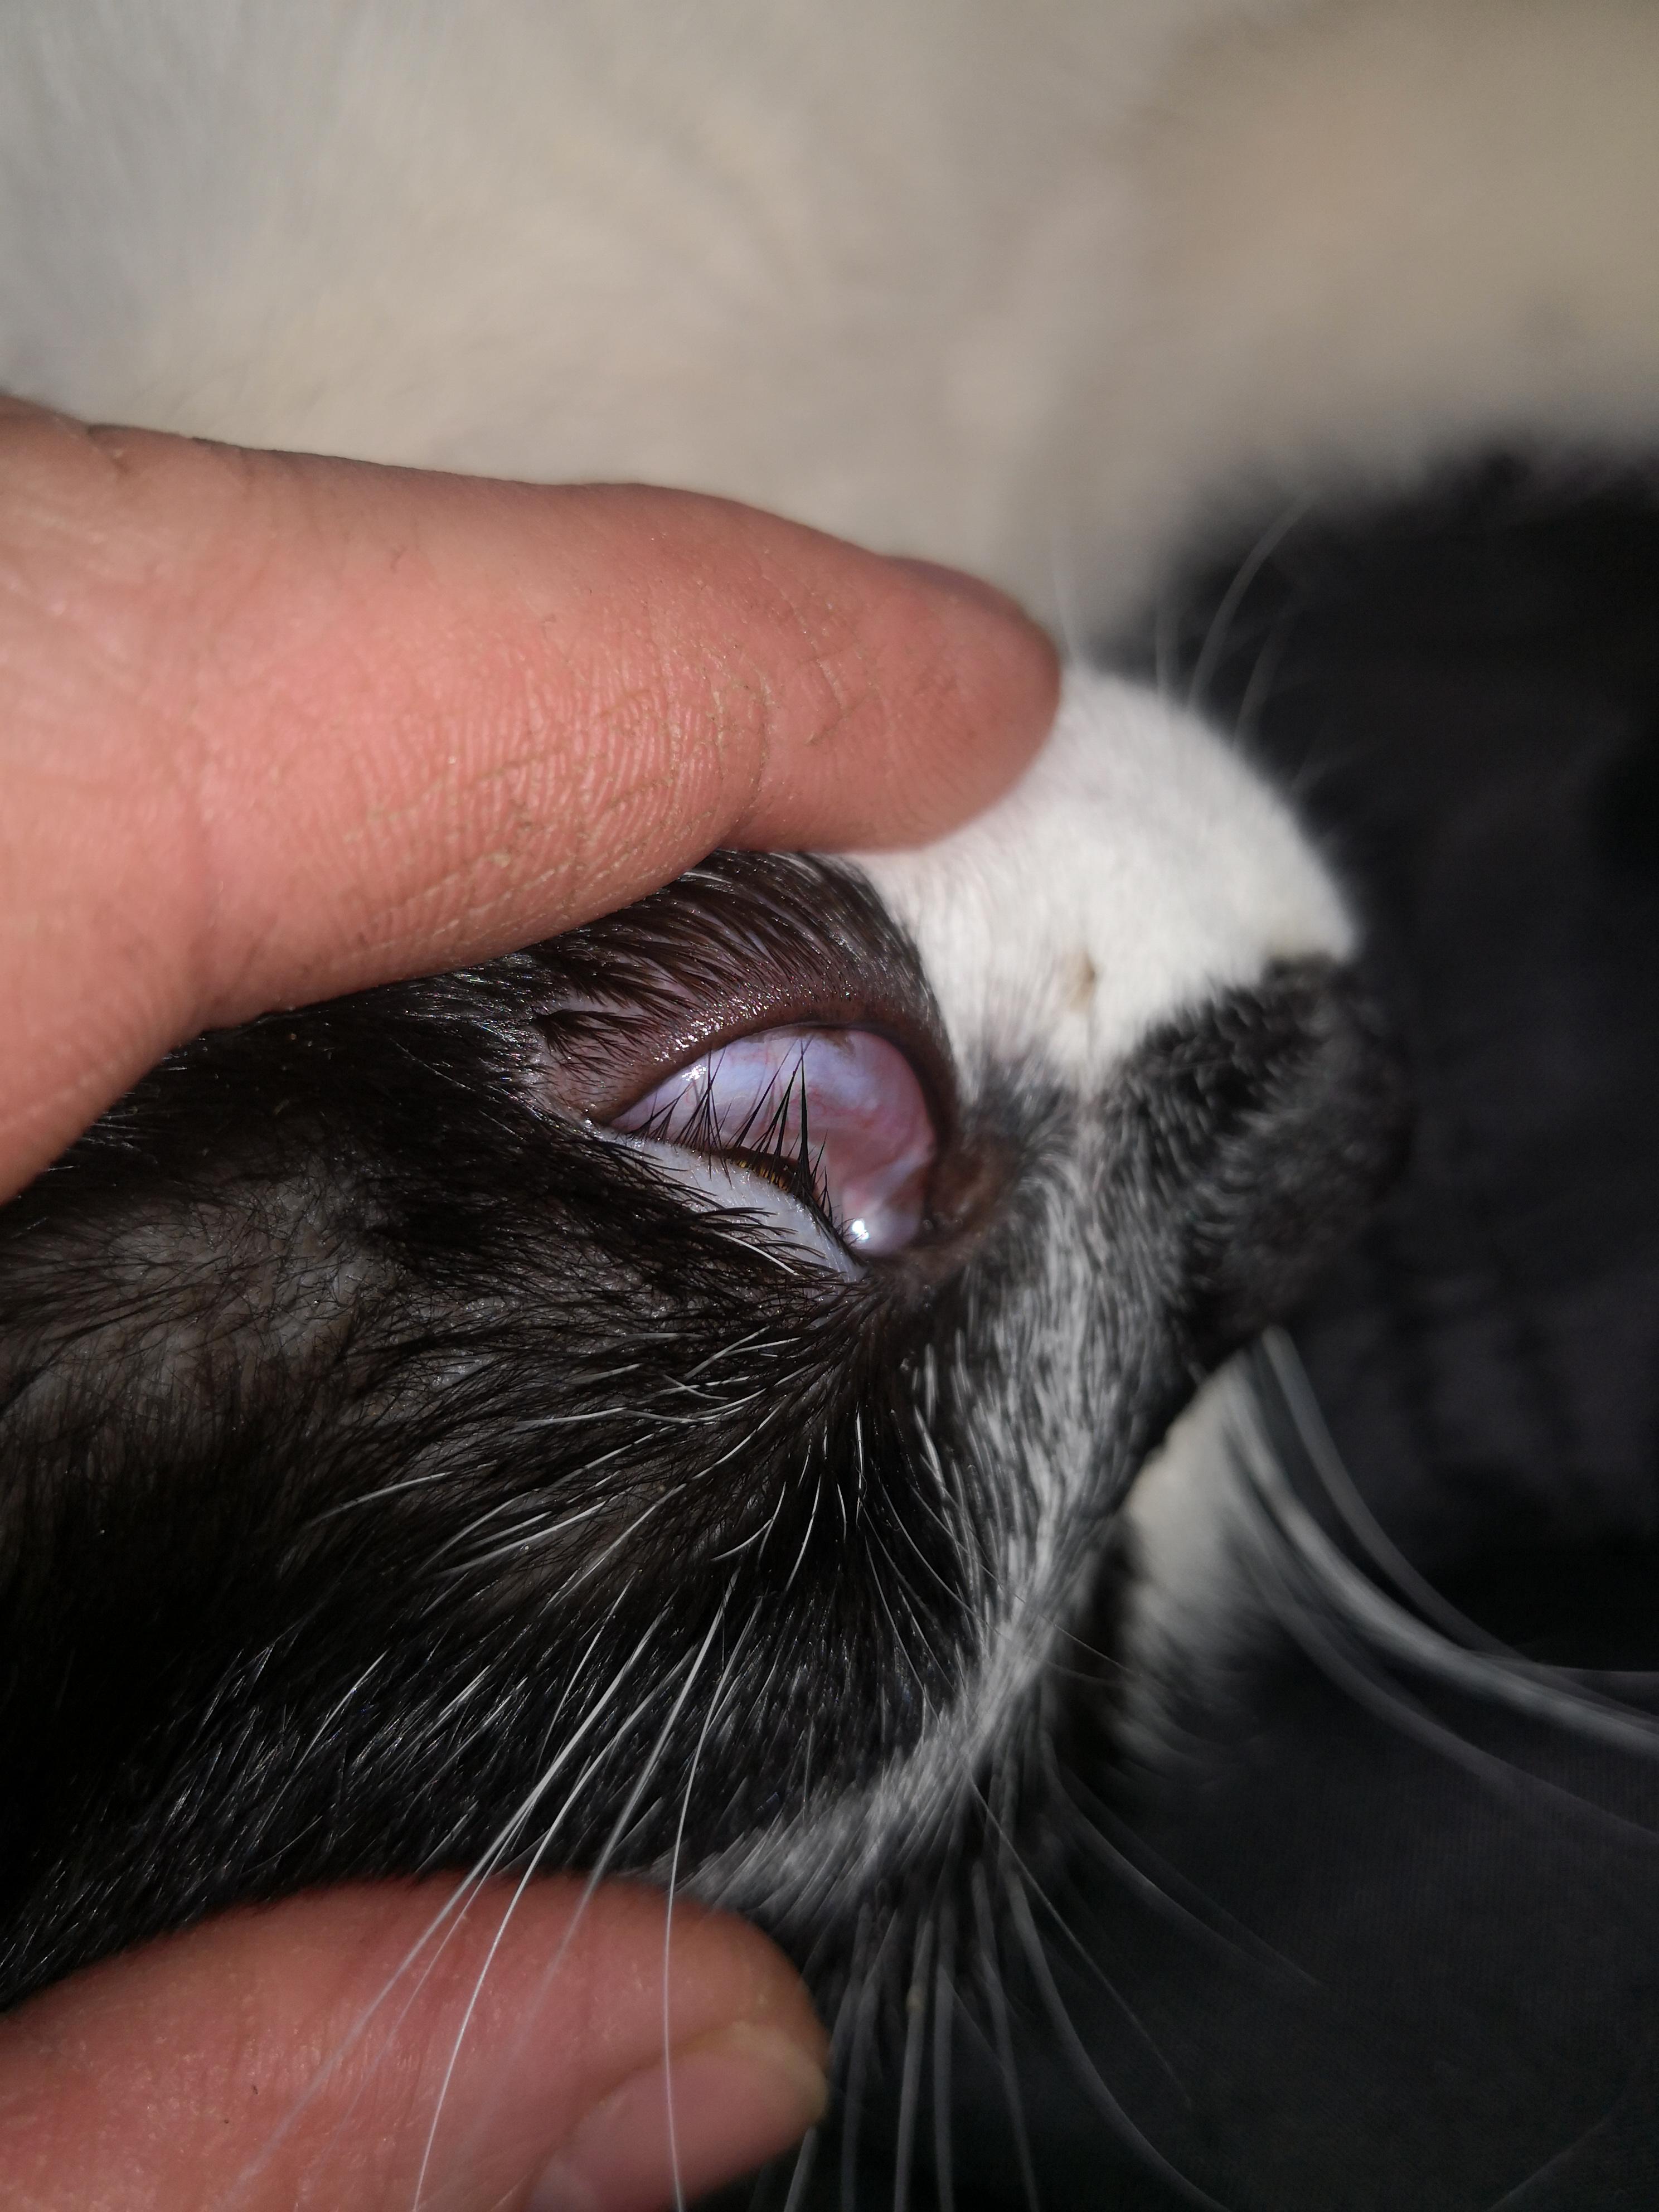 У котёнка опухло третье веко, бесплатная консультация ветеринара - вопрос  задан пользователем Ilze Stempere про питомца: кошка Без породы (домашняя  кошка)